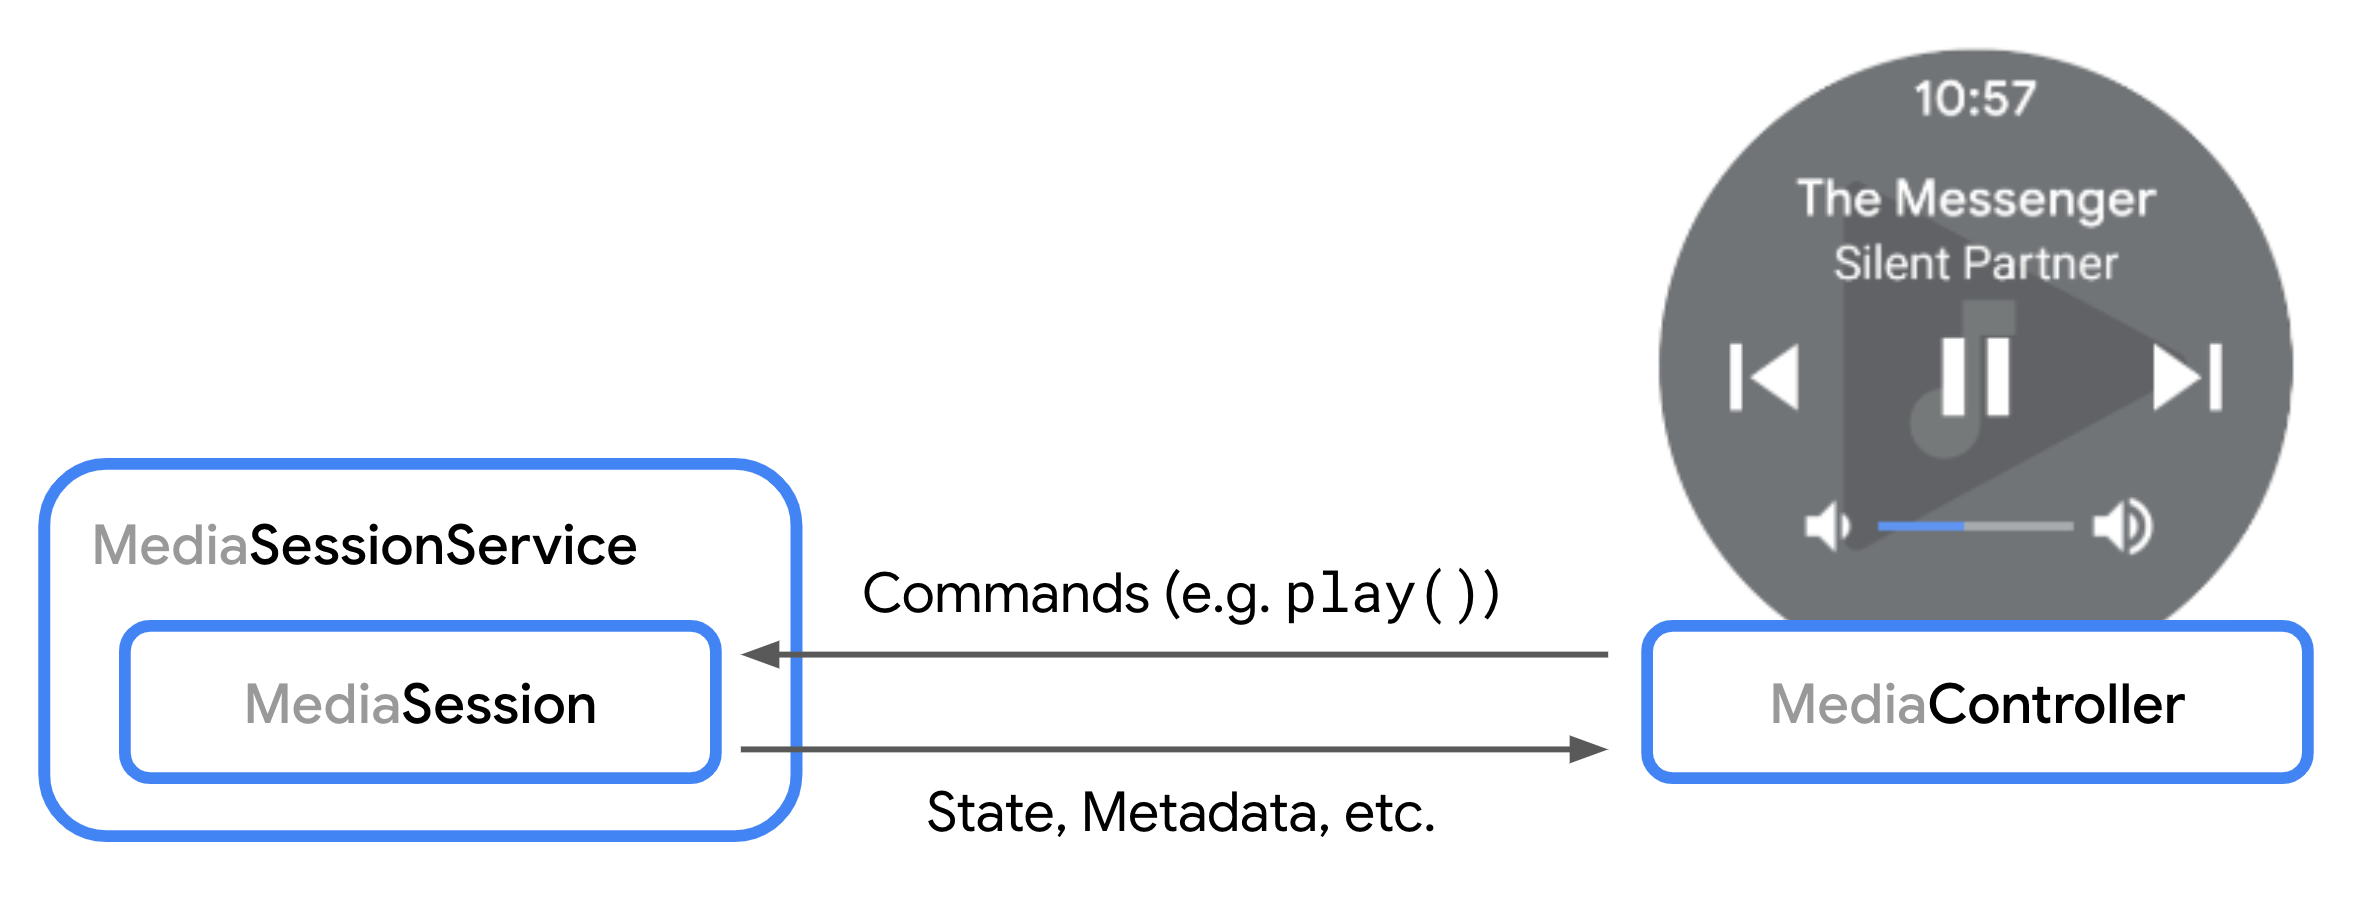 Mediasession और MediaController के बीच इंटरैक्शन को दिखाने वाला डायग्राम.